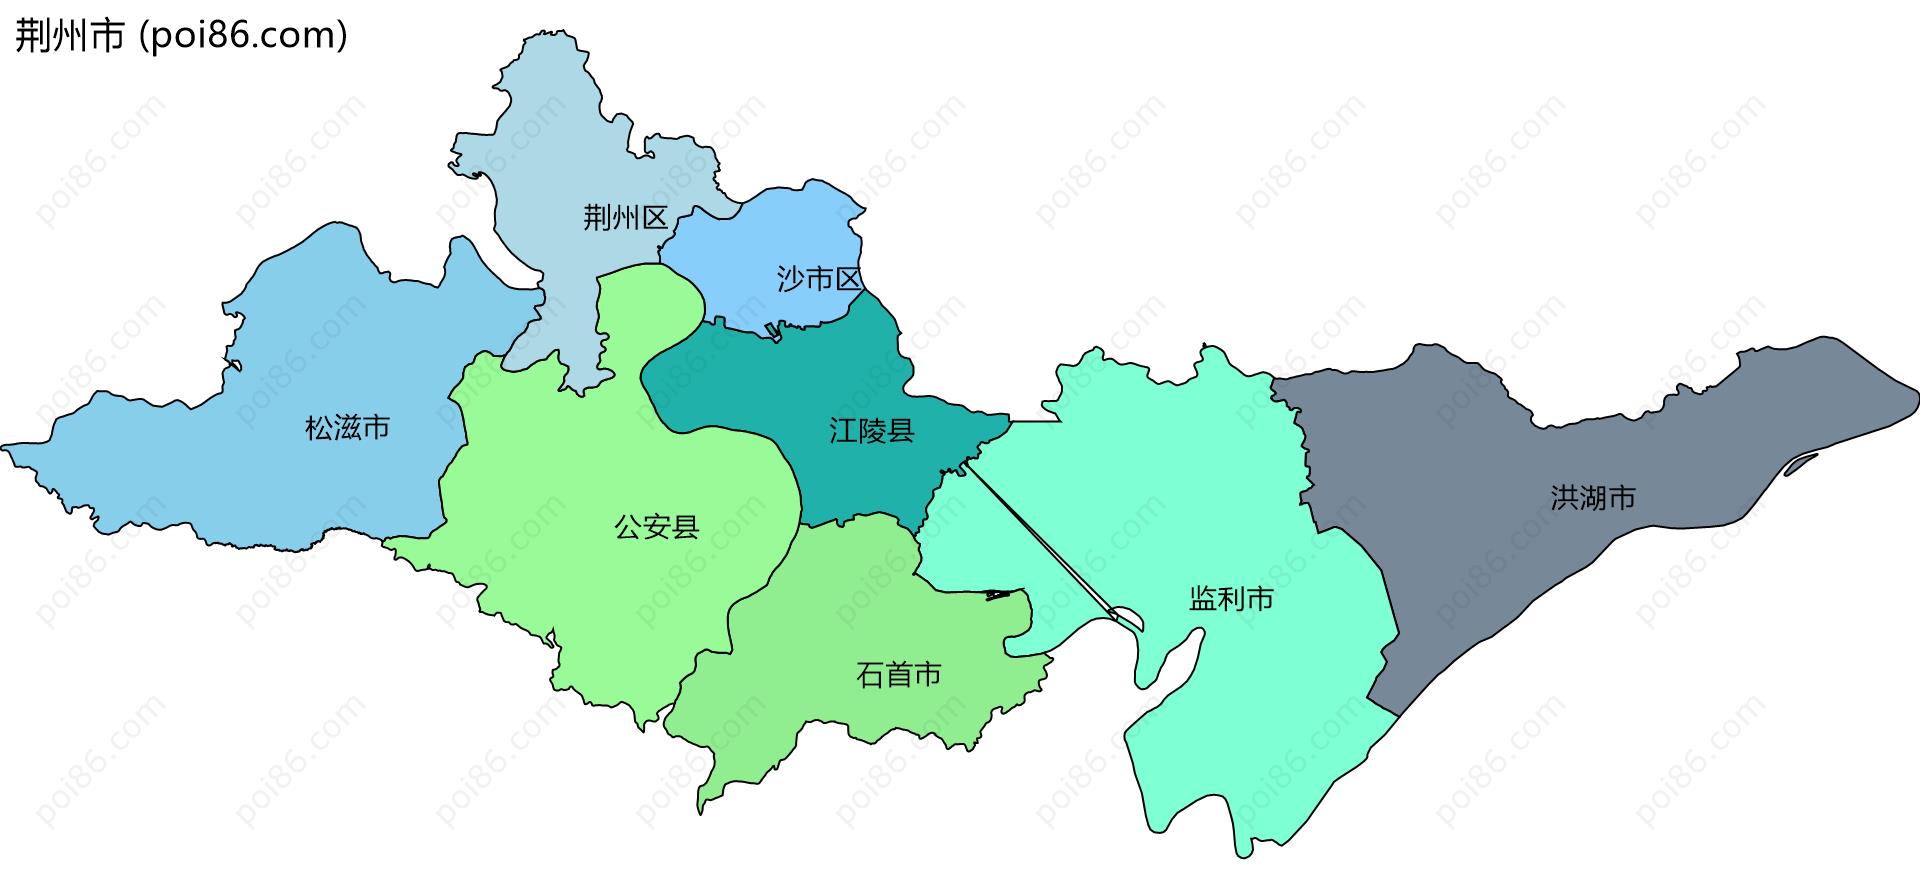 荆州市边界地图